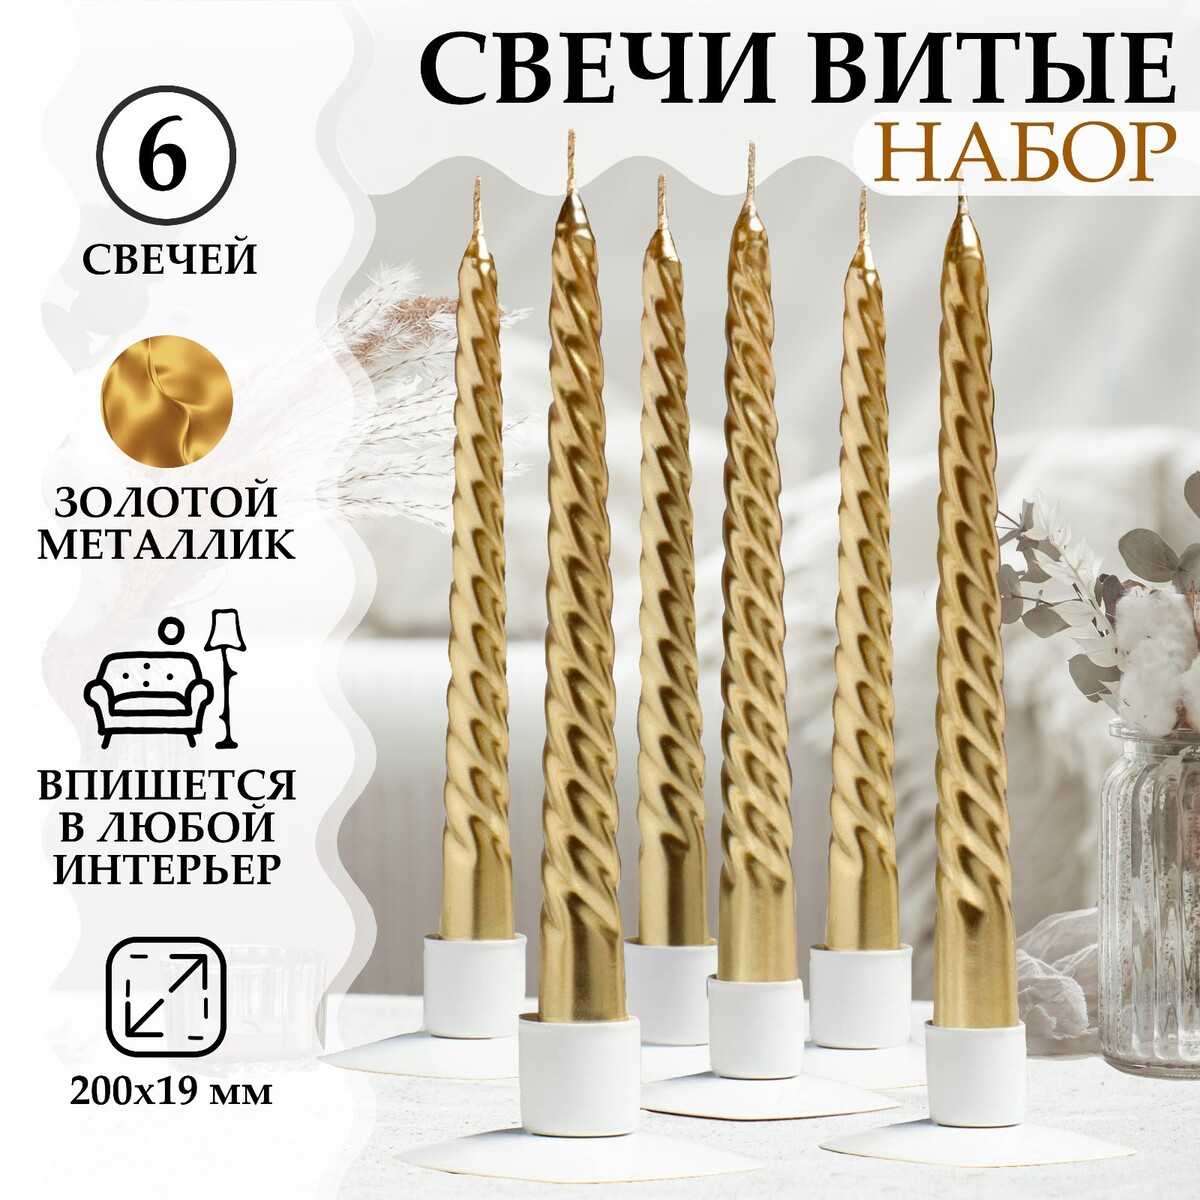 Набор свечей витых, 1,9х 20 см, 6 штук, золотой металлик набор свечей витых 1 5х 15 см 2 штуки золотой металлик